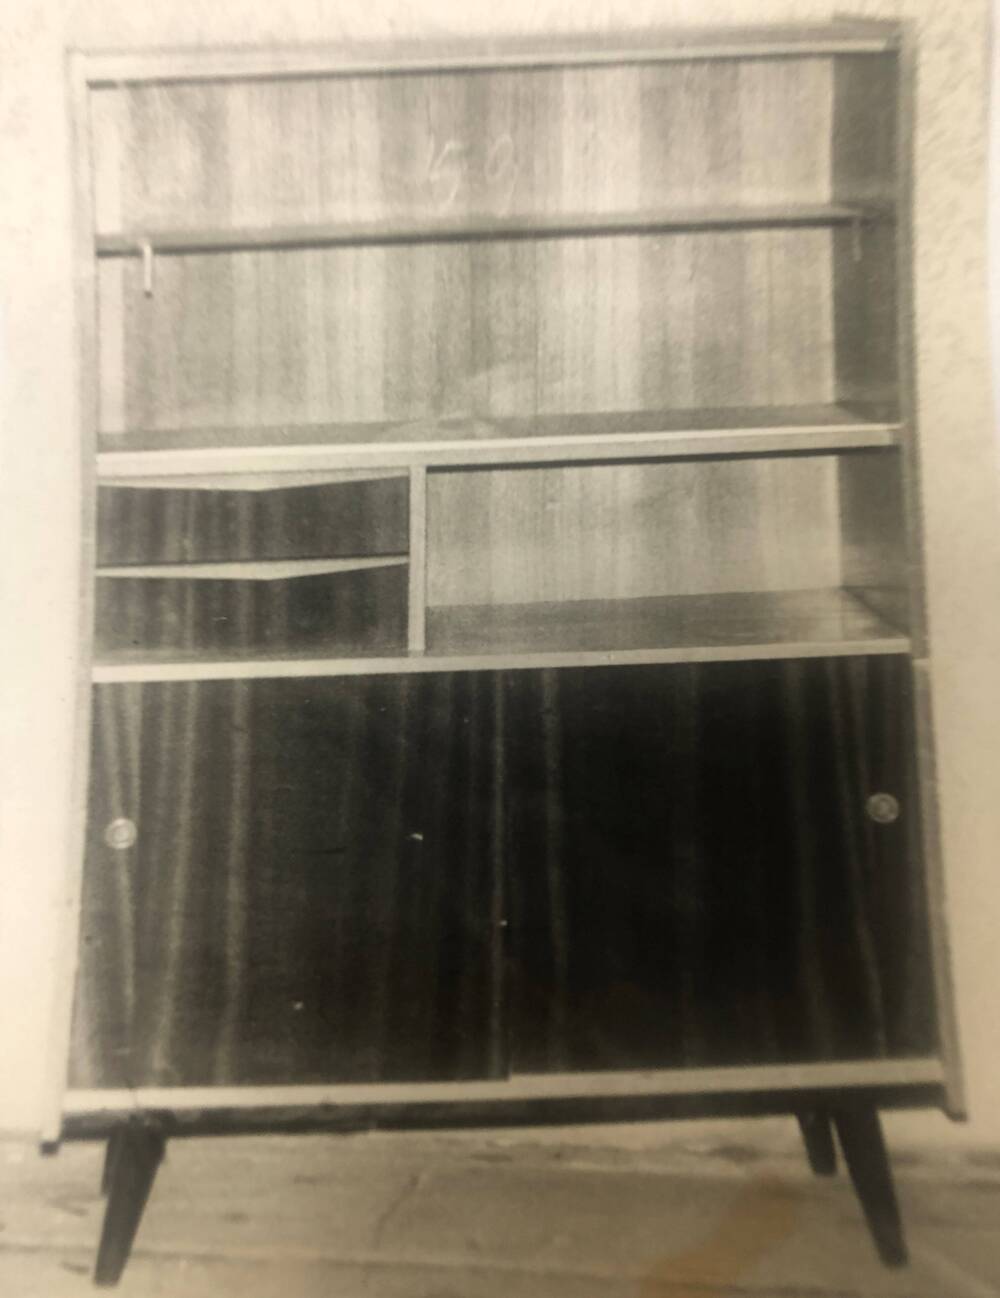 Фото ч/б. Буфет столовый из набора К-61-128. Производство Мелекесской мебельной фабрики. 1950-1960-е гг. ХХ в.